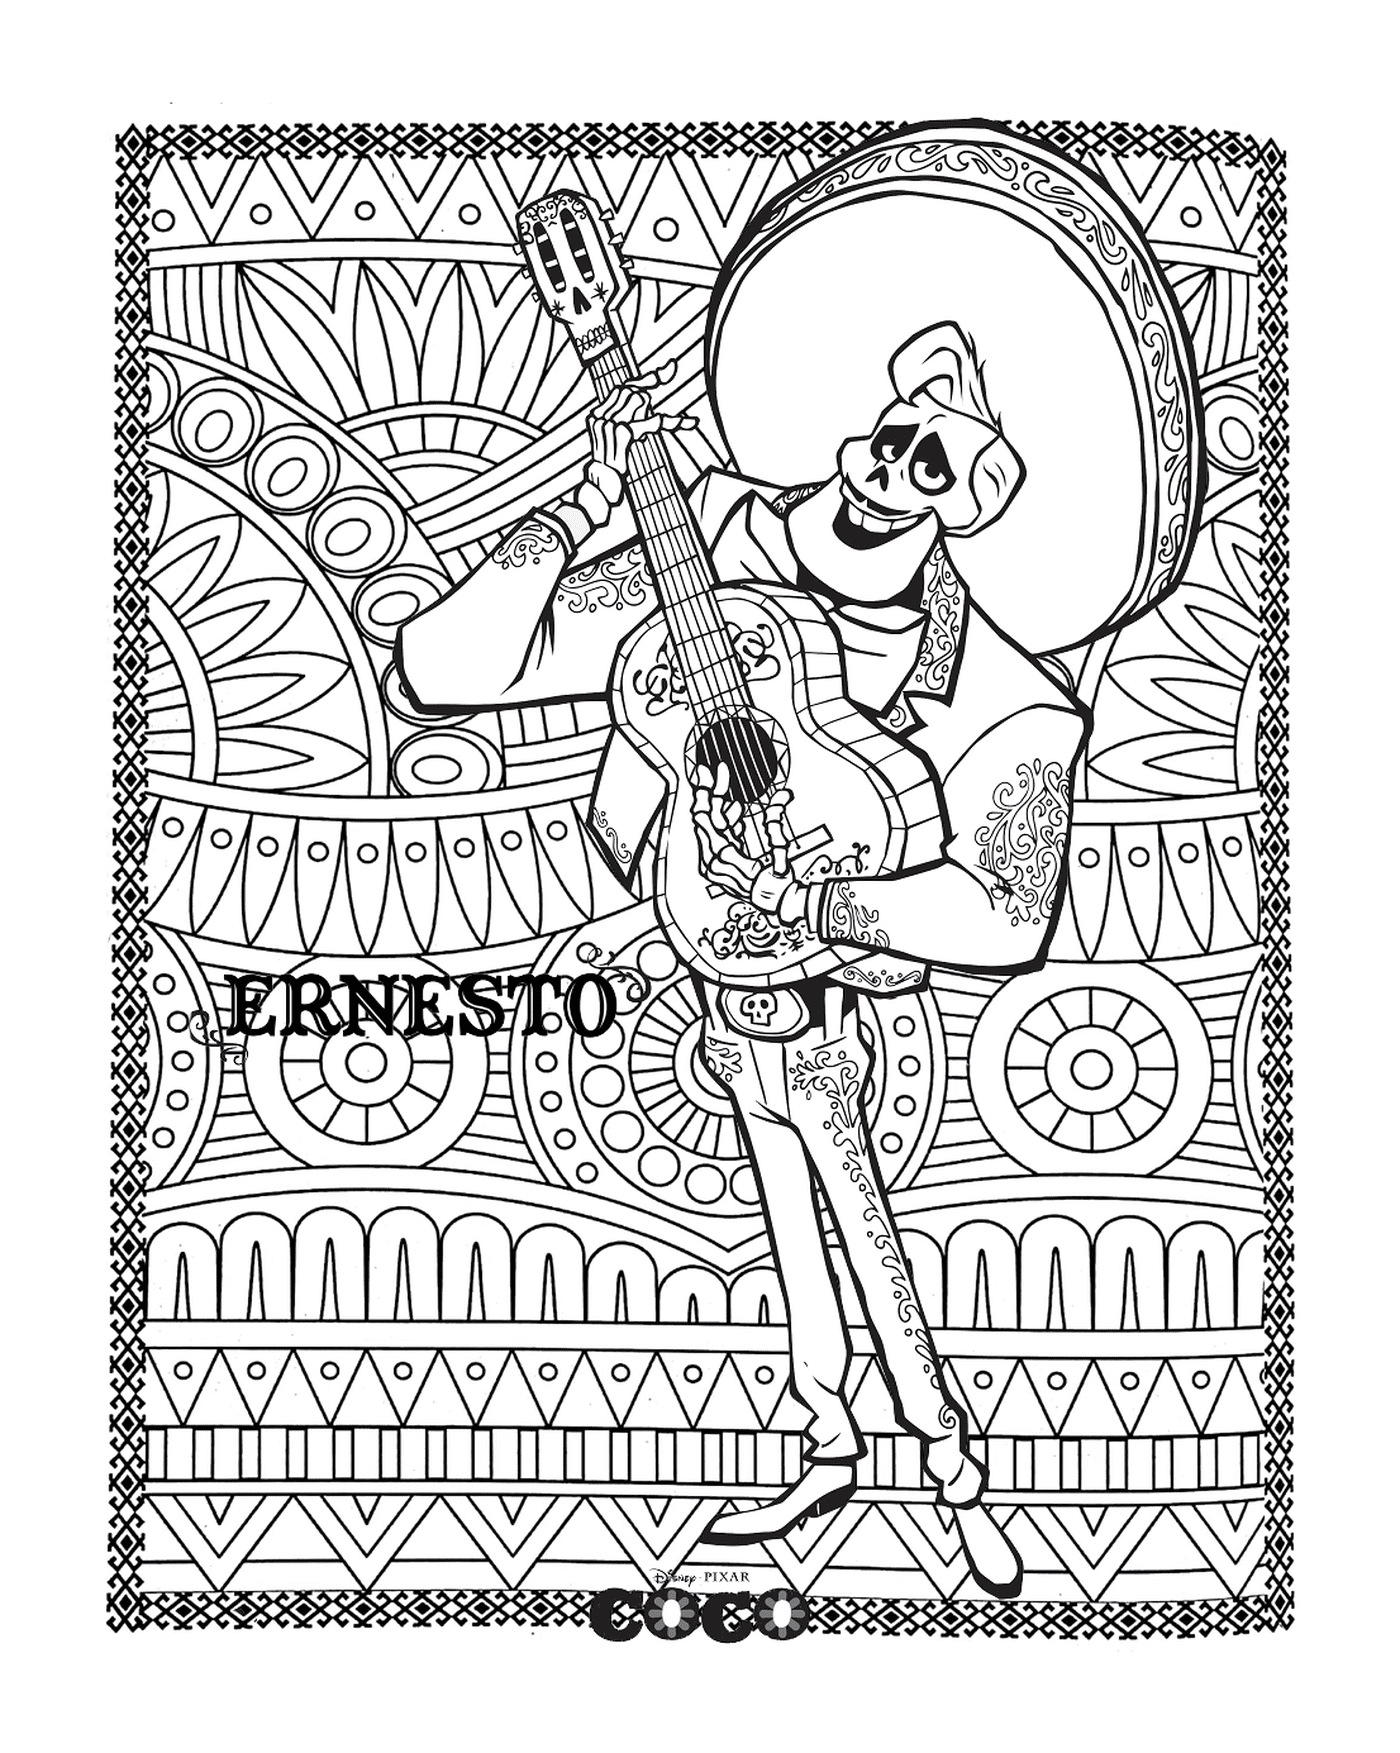  Ernesto, erwachsener Mandala-Hintergrund in Coco, Disney 